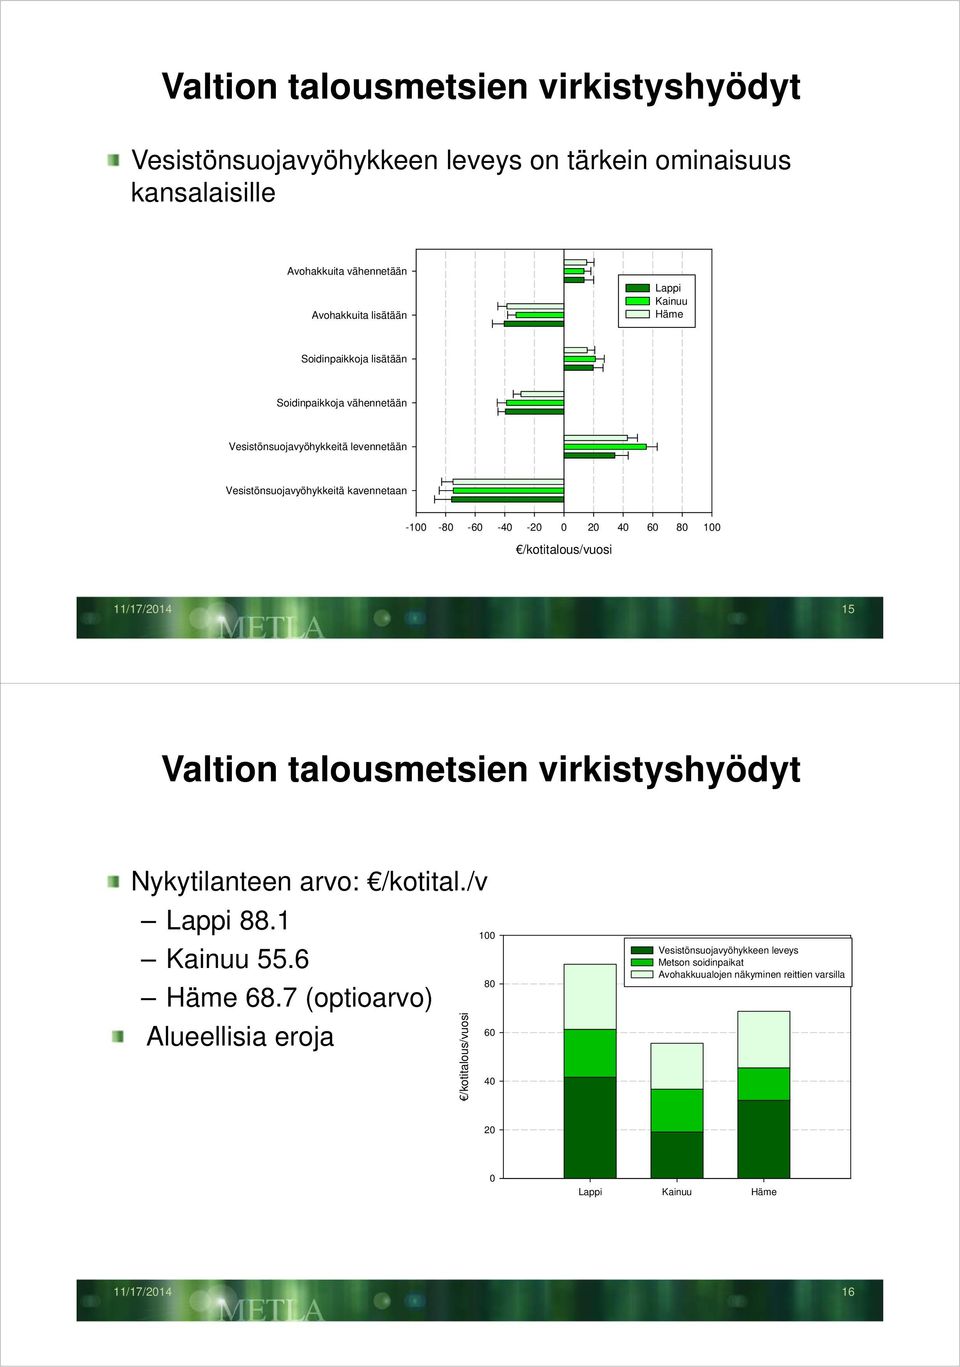 100 /kotitalous/vuosi 11/17/2014 15 Valtion talousmetsien virkistyshyödyt Nykytilanteen arvo: /kotital./v Lappi 88.1 Kainuu 55.6 Häme 68.